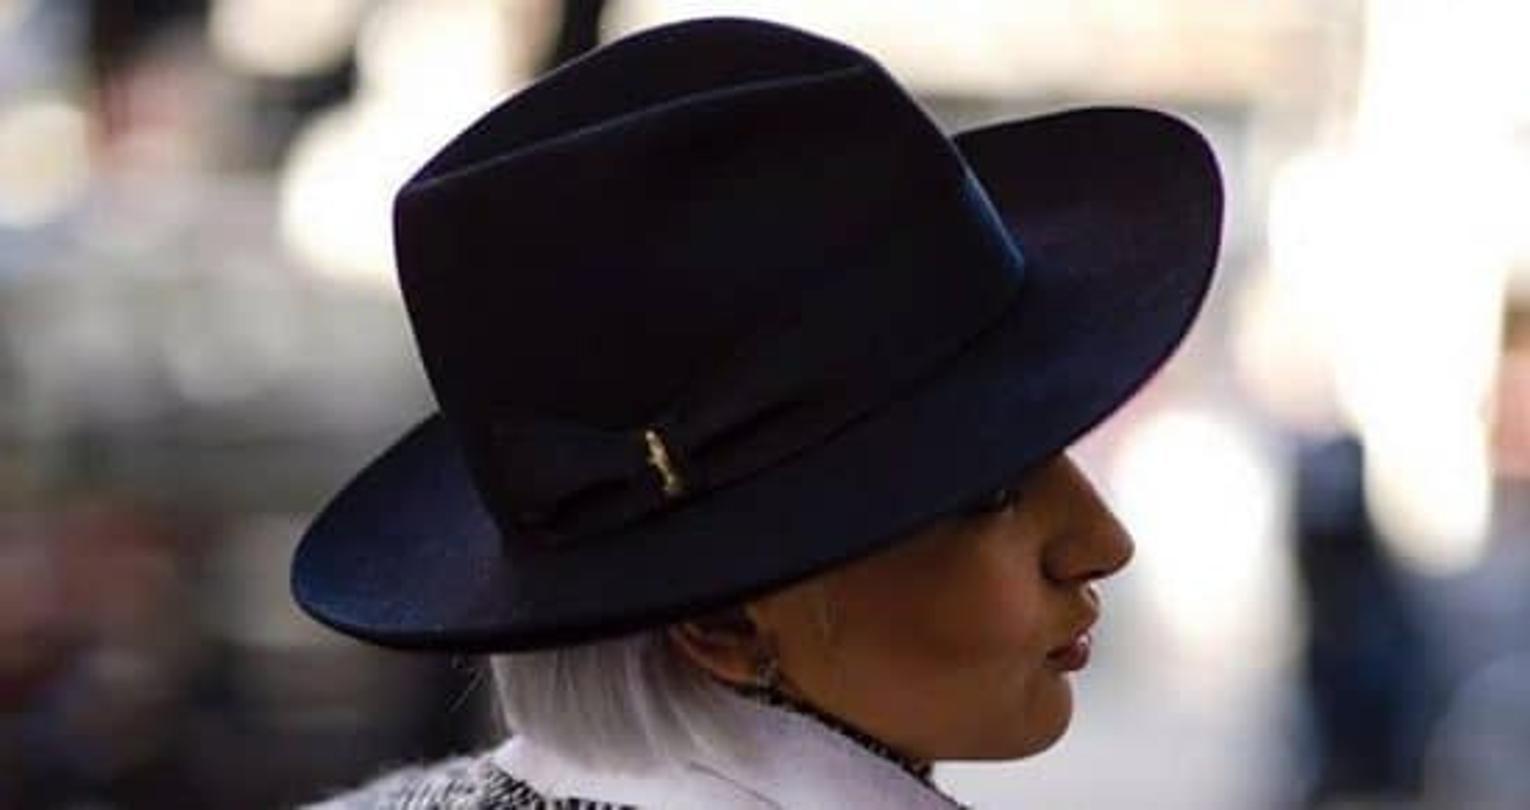 La star des chapeaux, le Borsalino fête ses 160 ans - Challenges